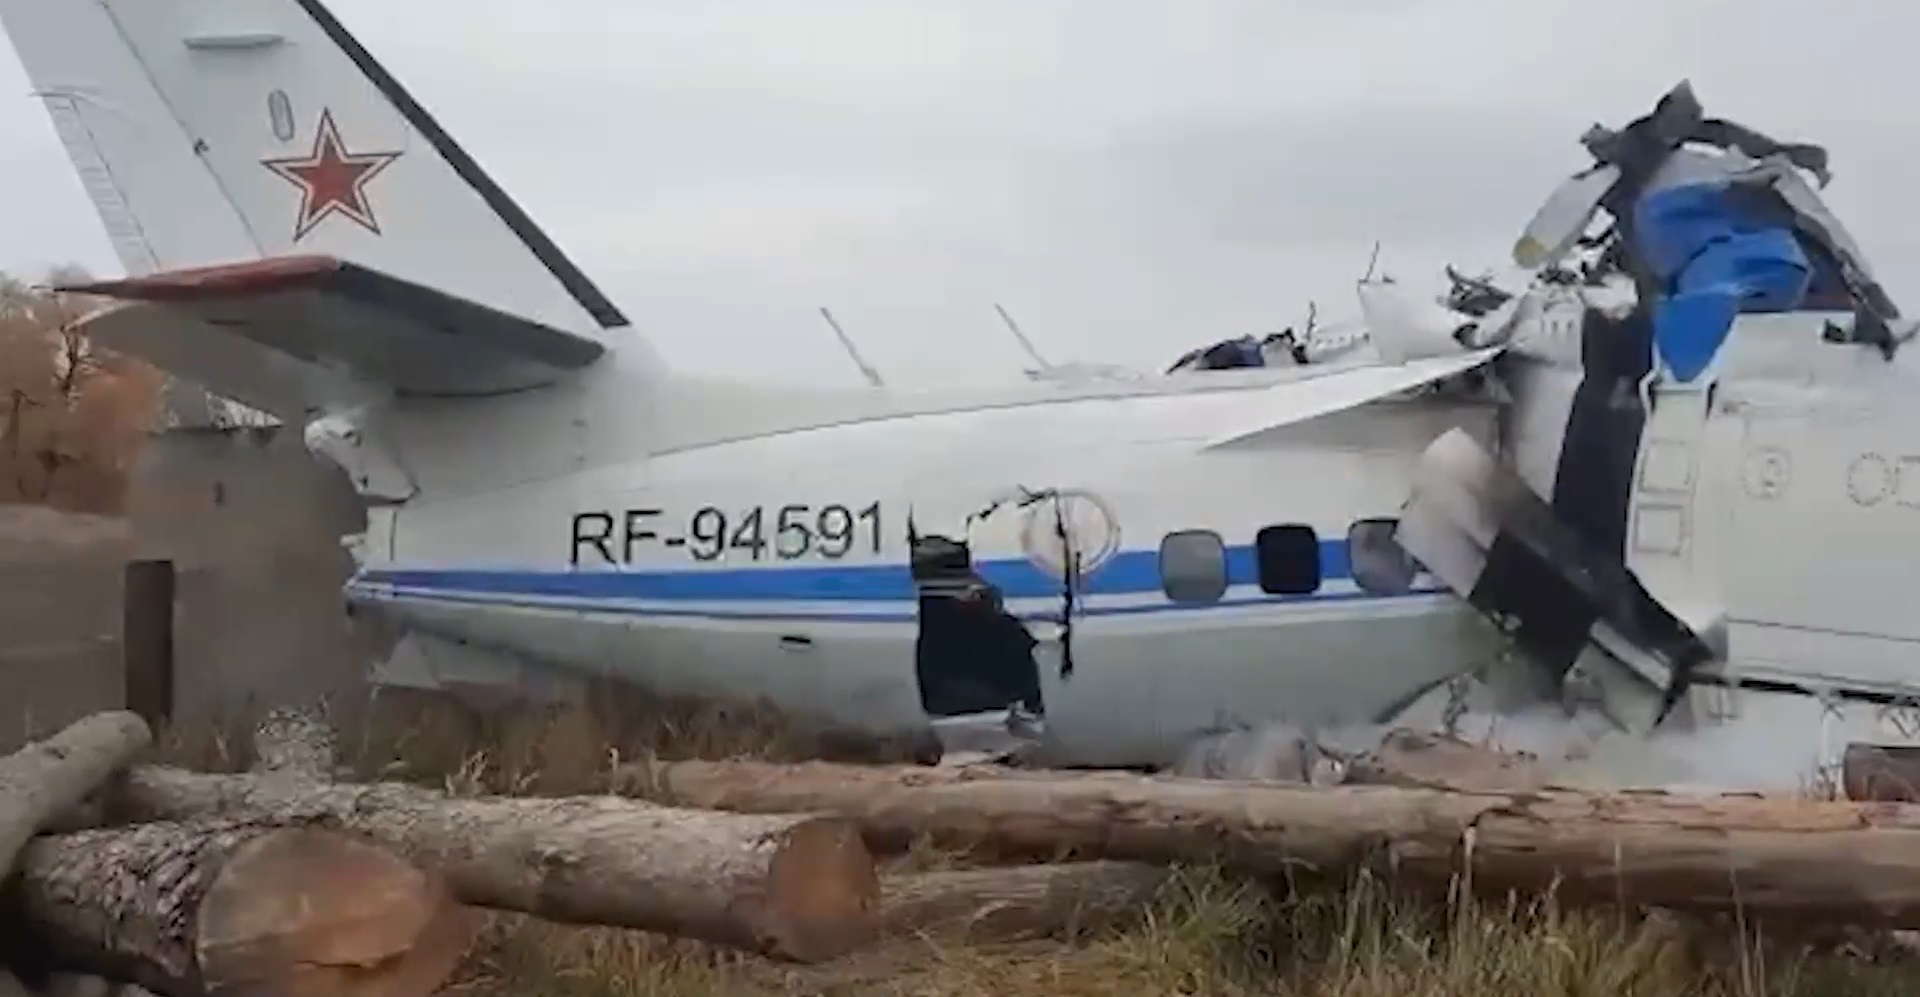 ДОСААФ приостановил полеты L-410 после крушения в Татарстане